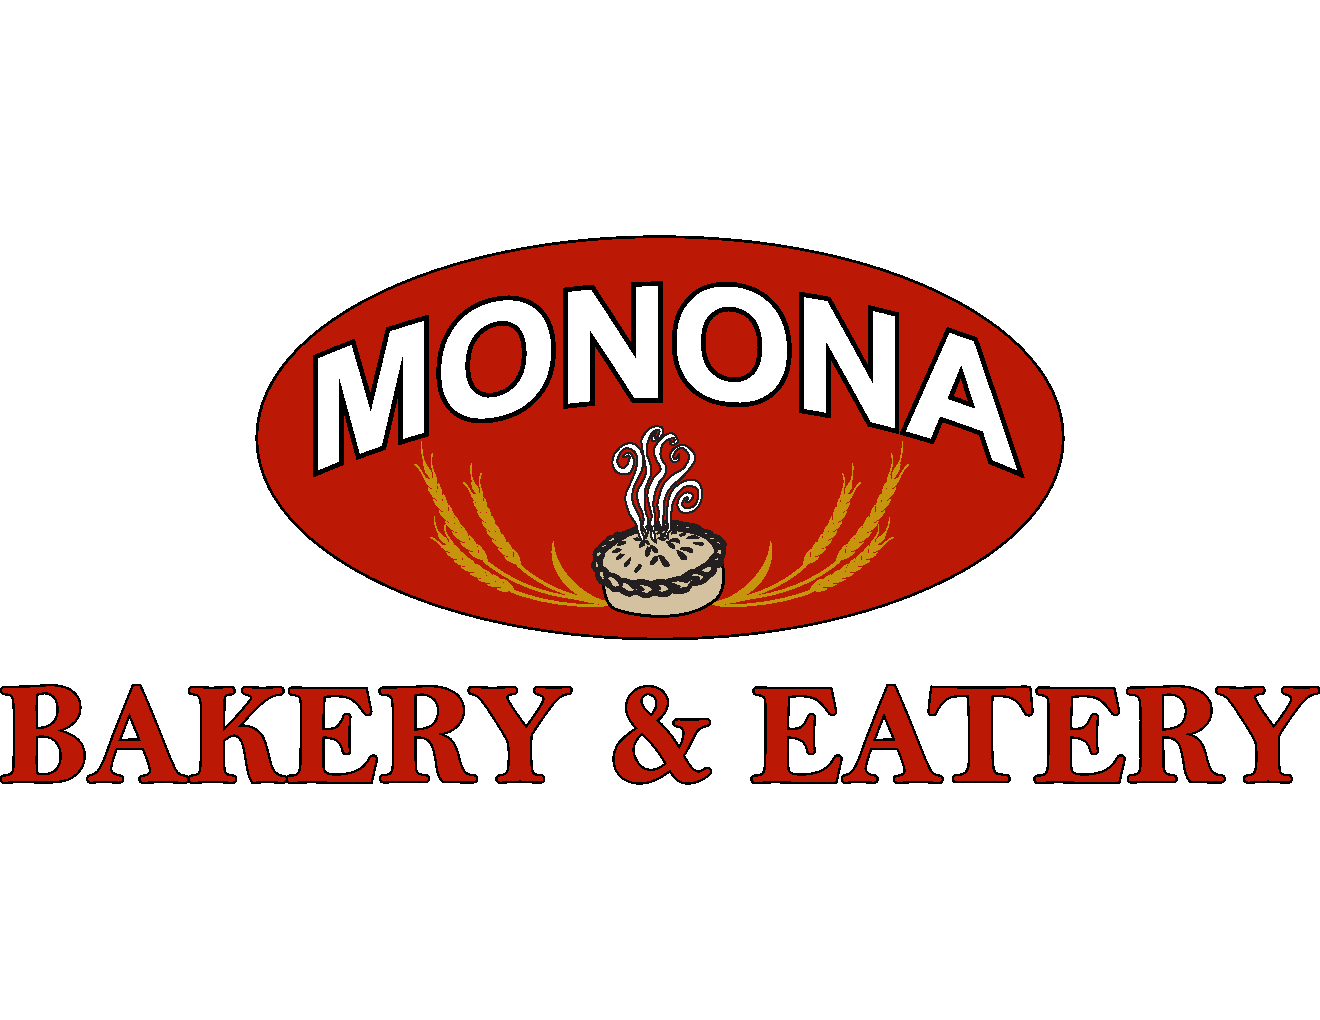 Monona Bakery & Eatery